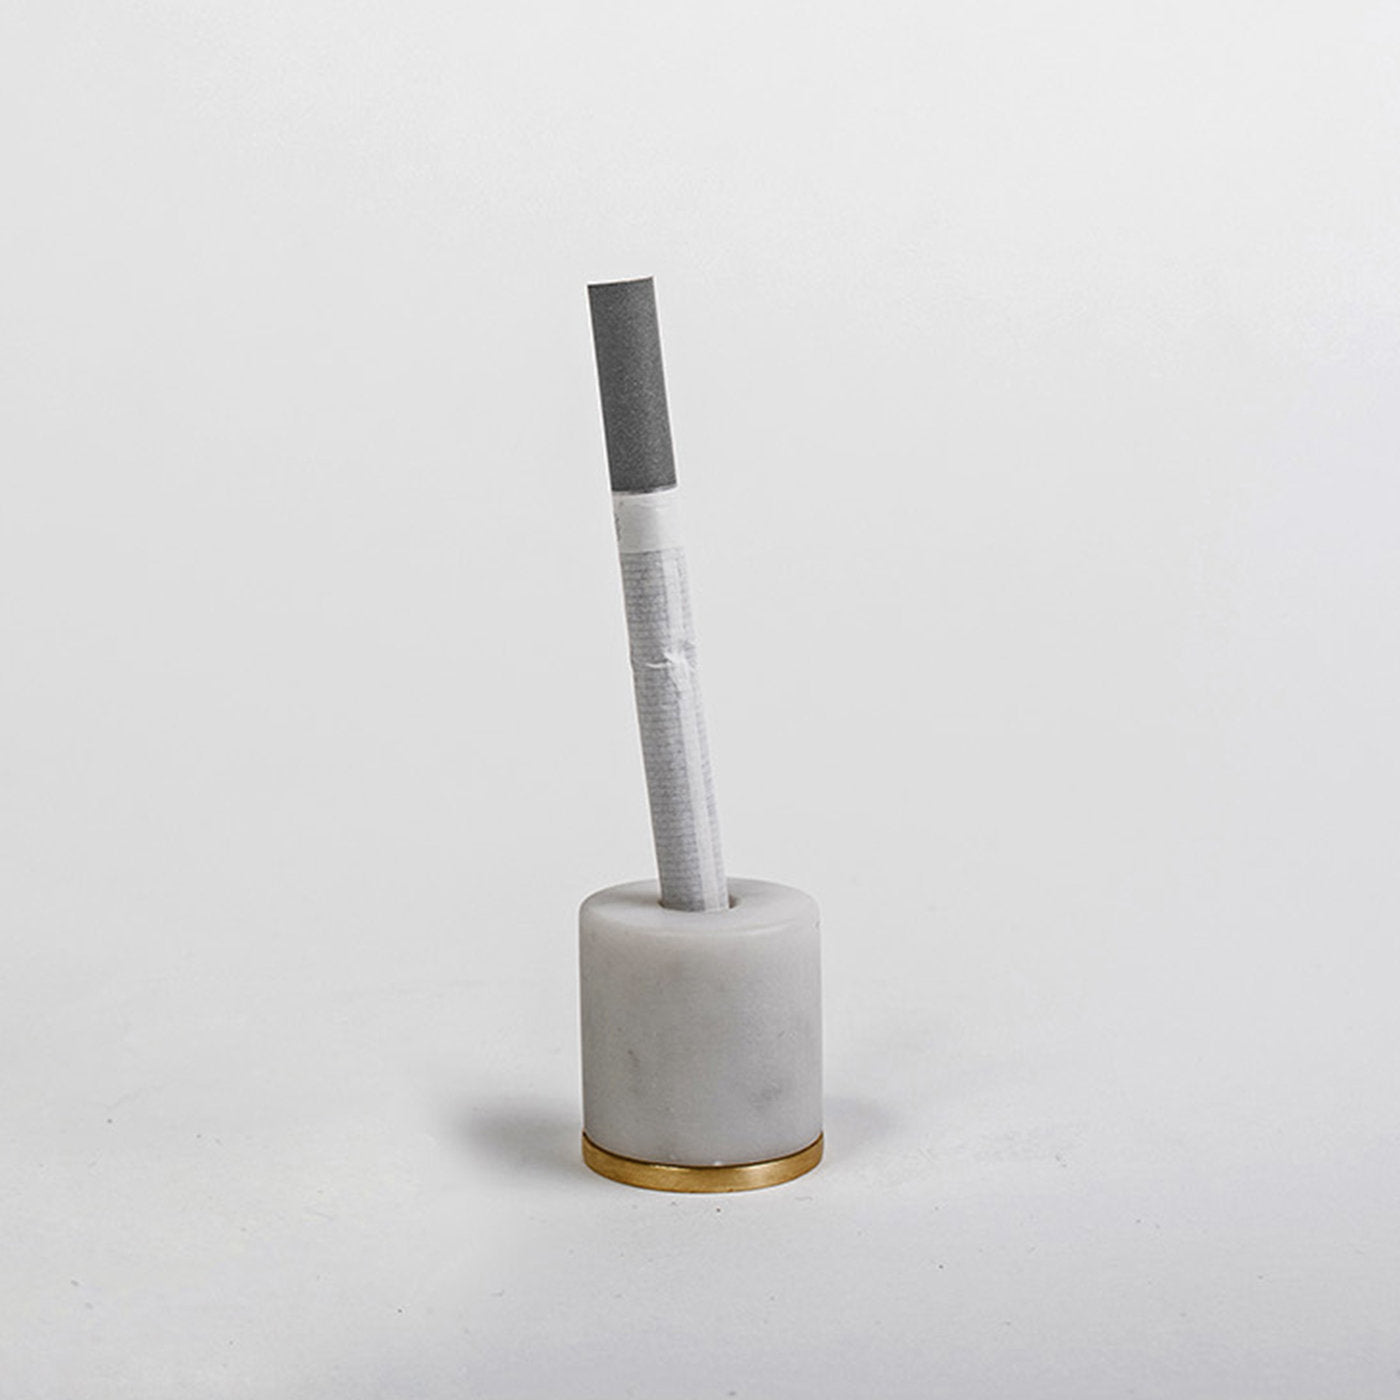 Mangiafuoco Cigarette Snuffer - Alternative view 1